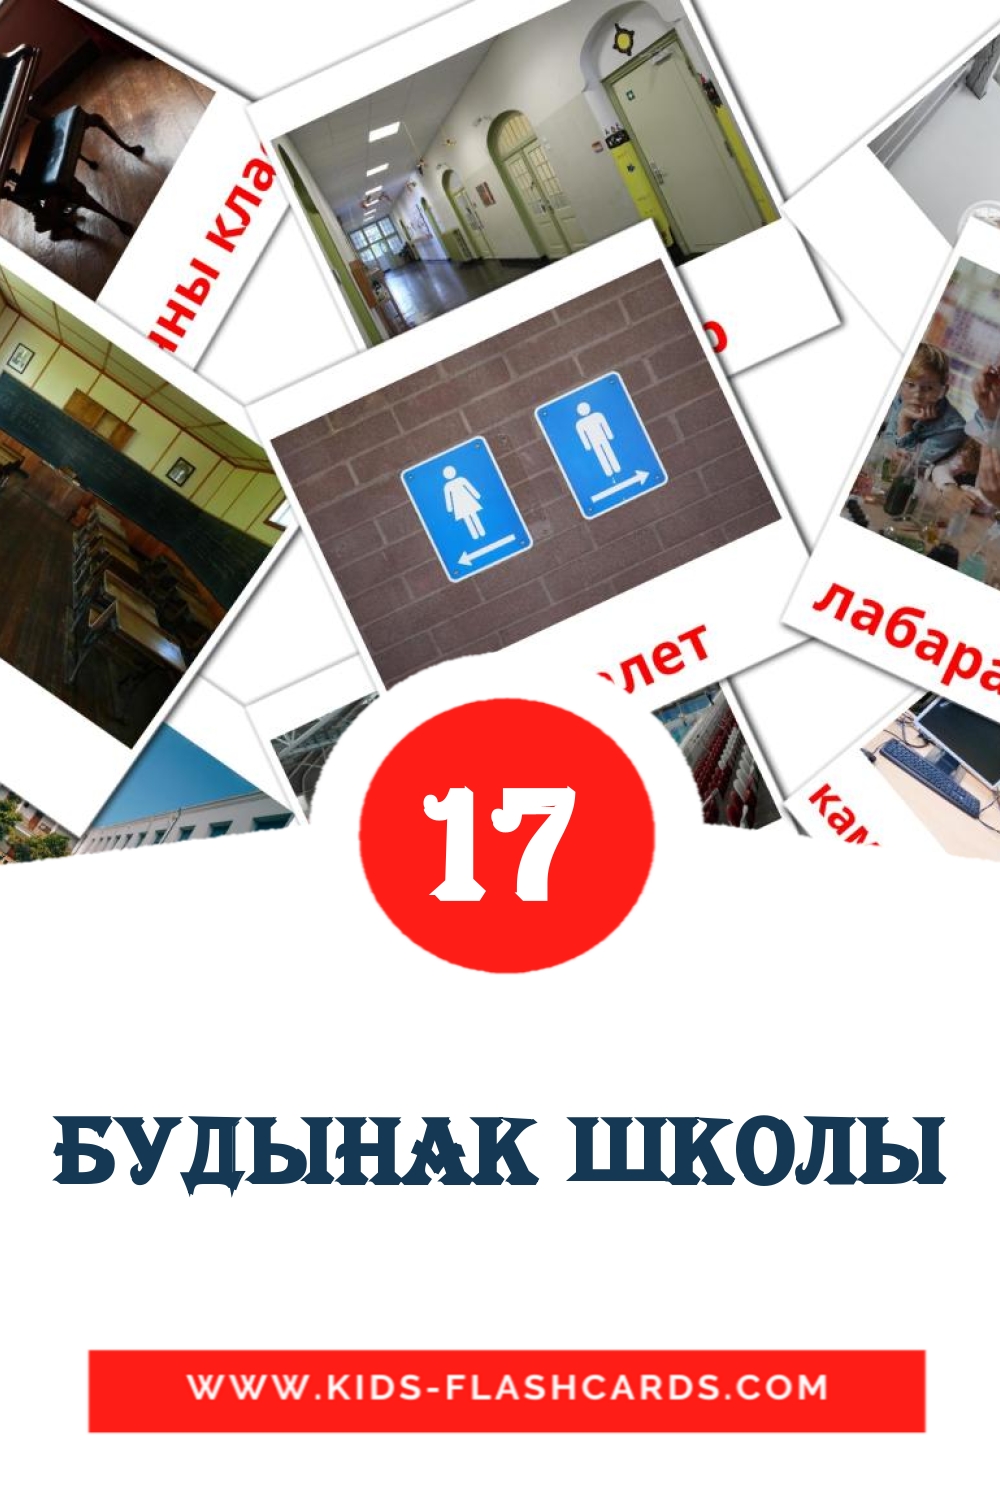 17 Cartões com Imagens de Будынак школы para Jardim de Infância em bielorrusso